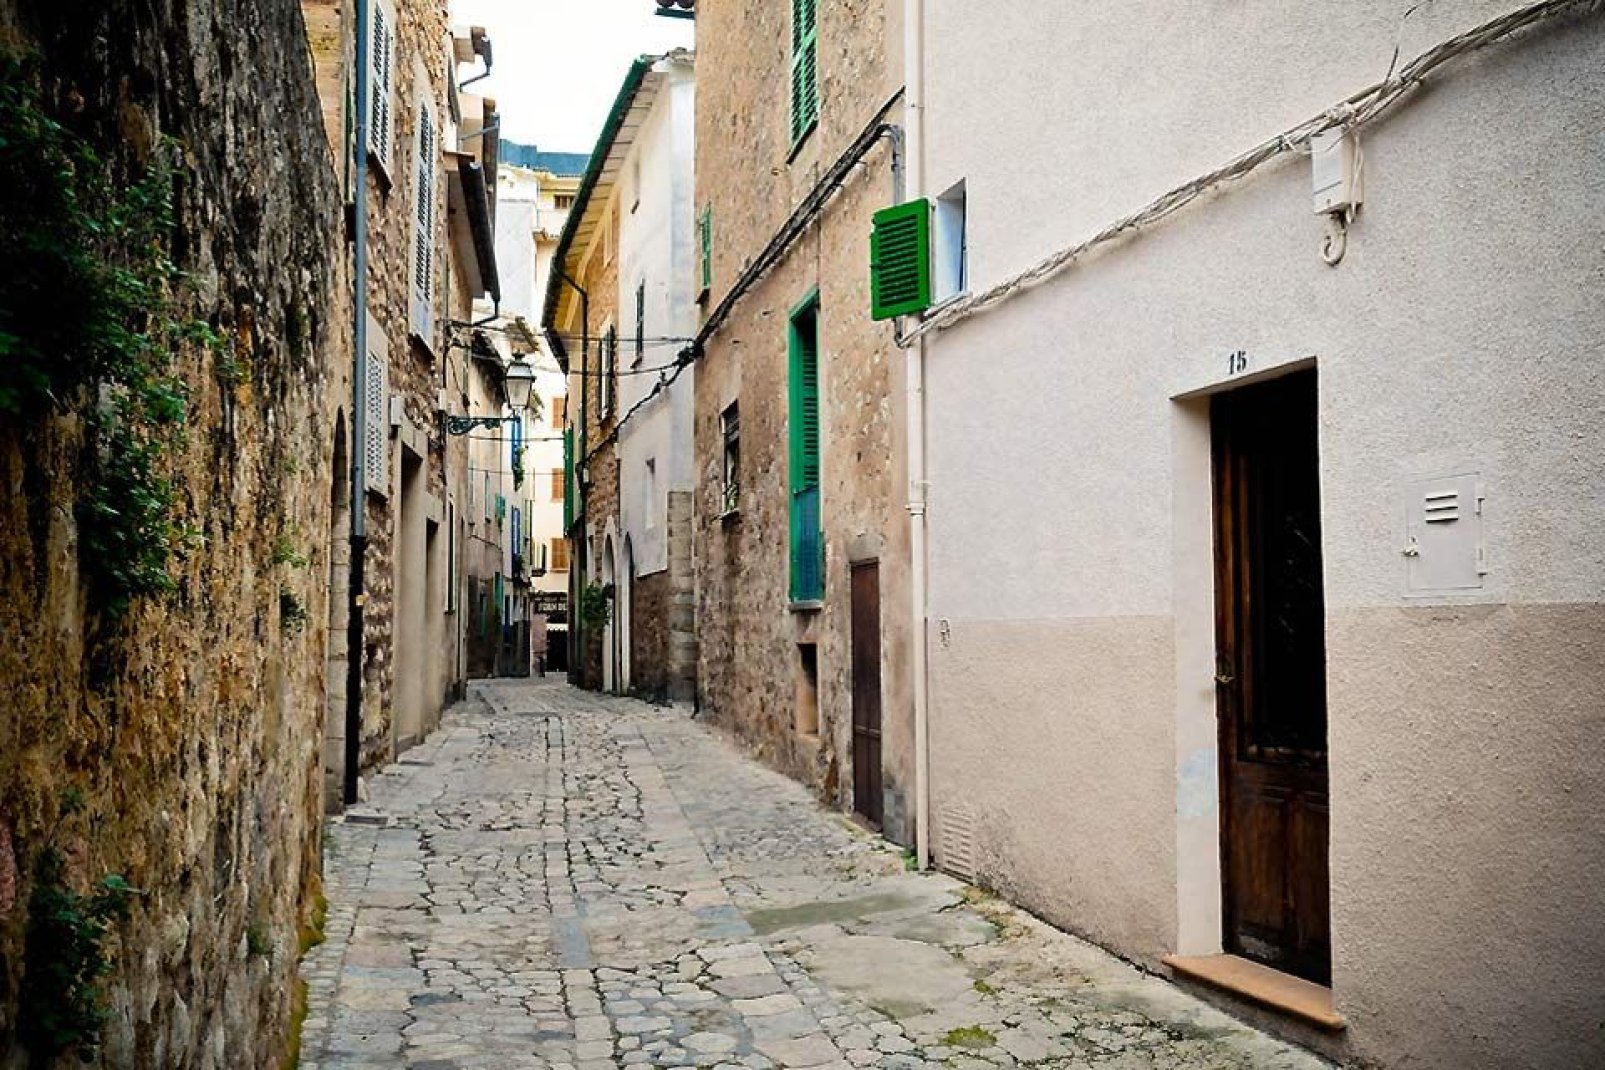 14 000 habitants vivent dans cette petite ville de Majorque.